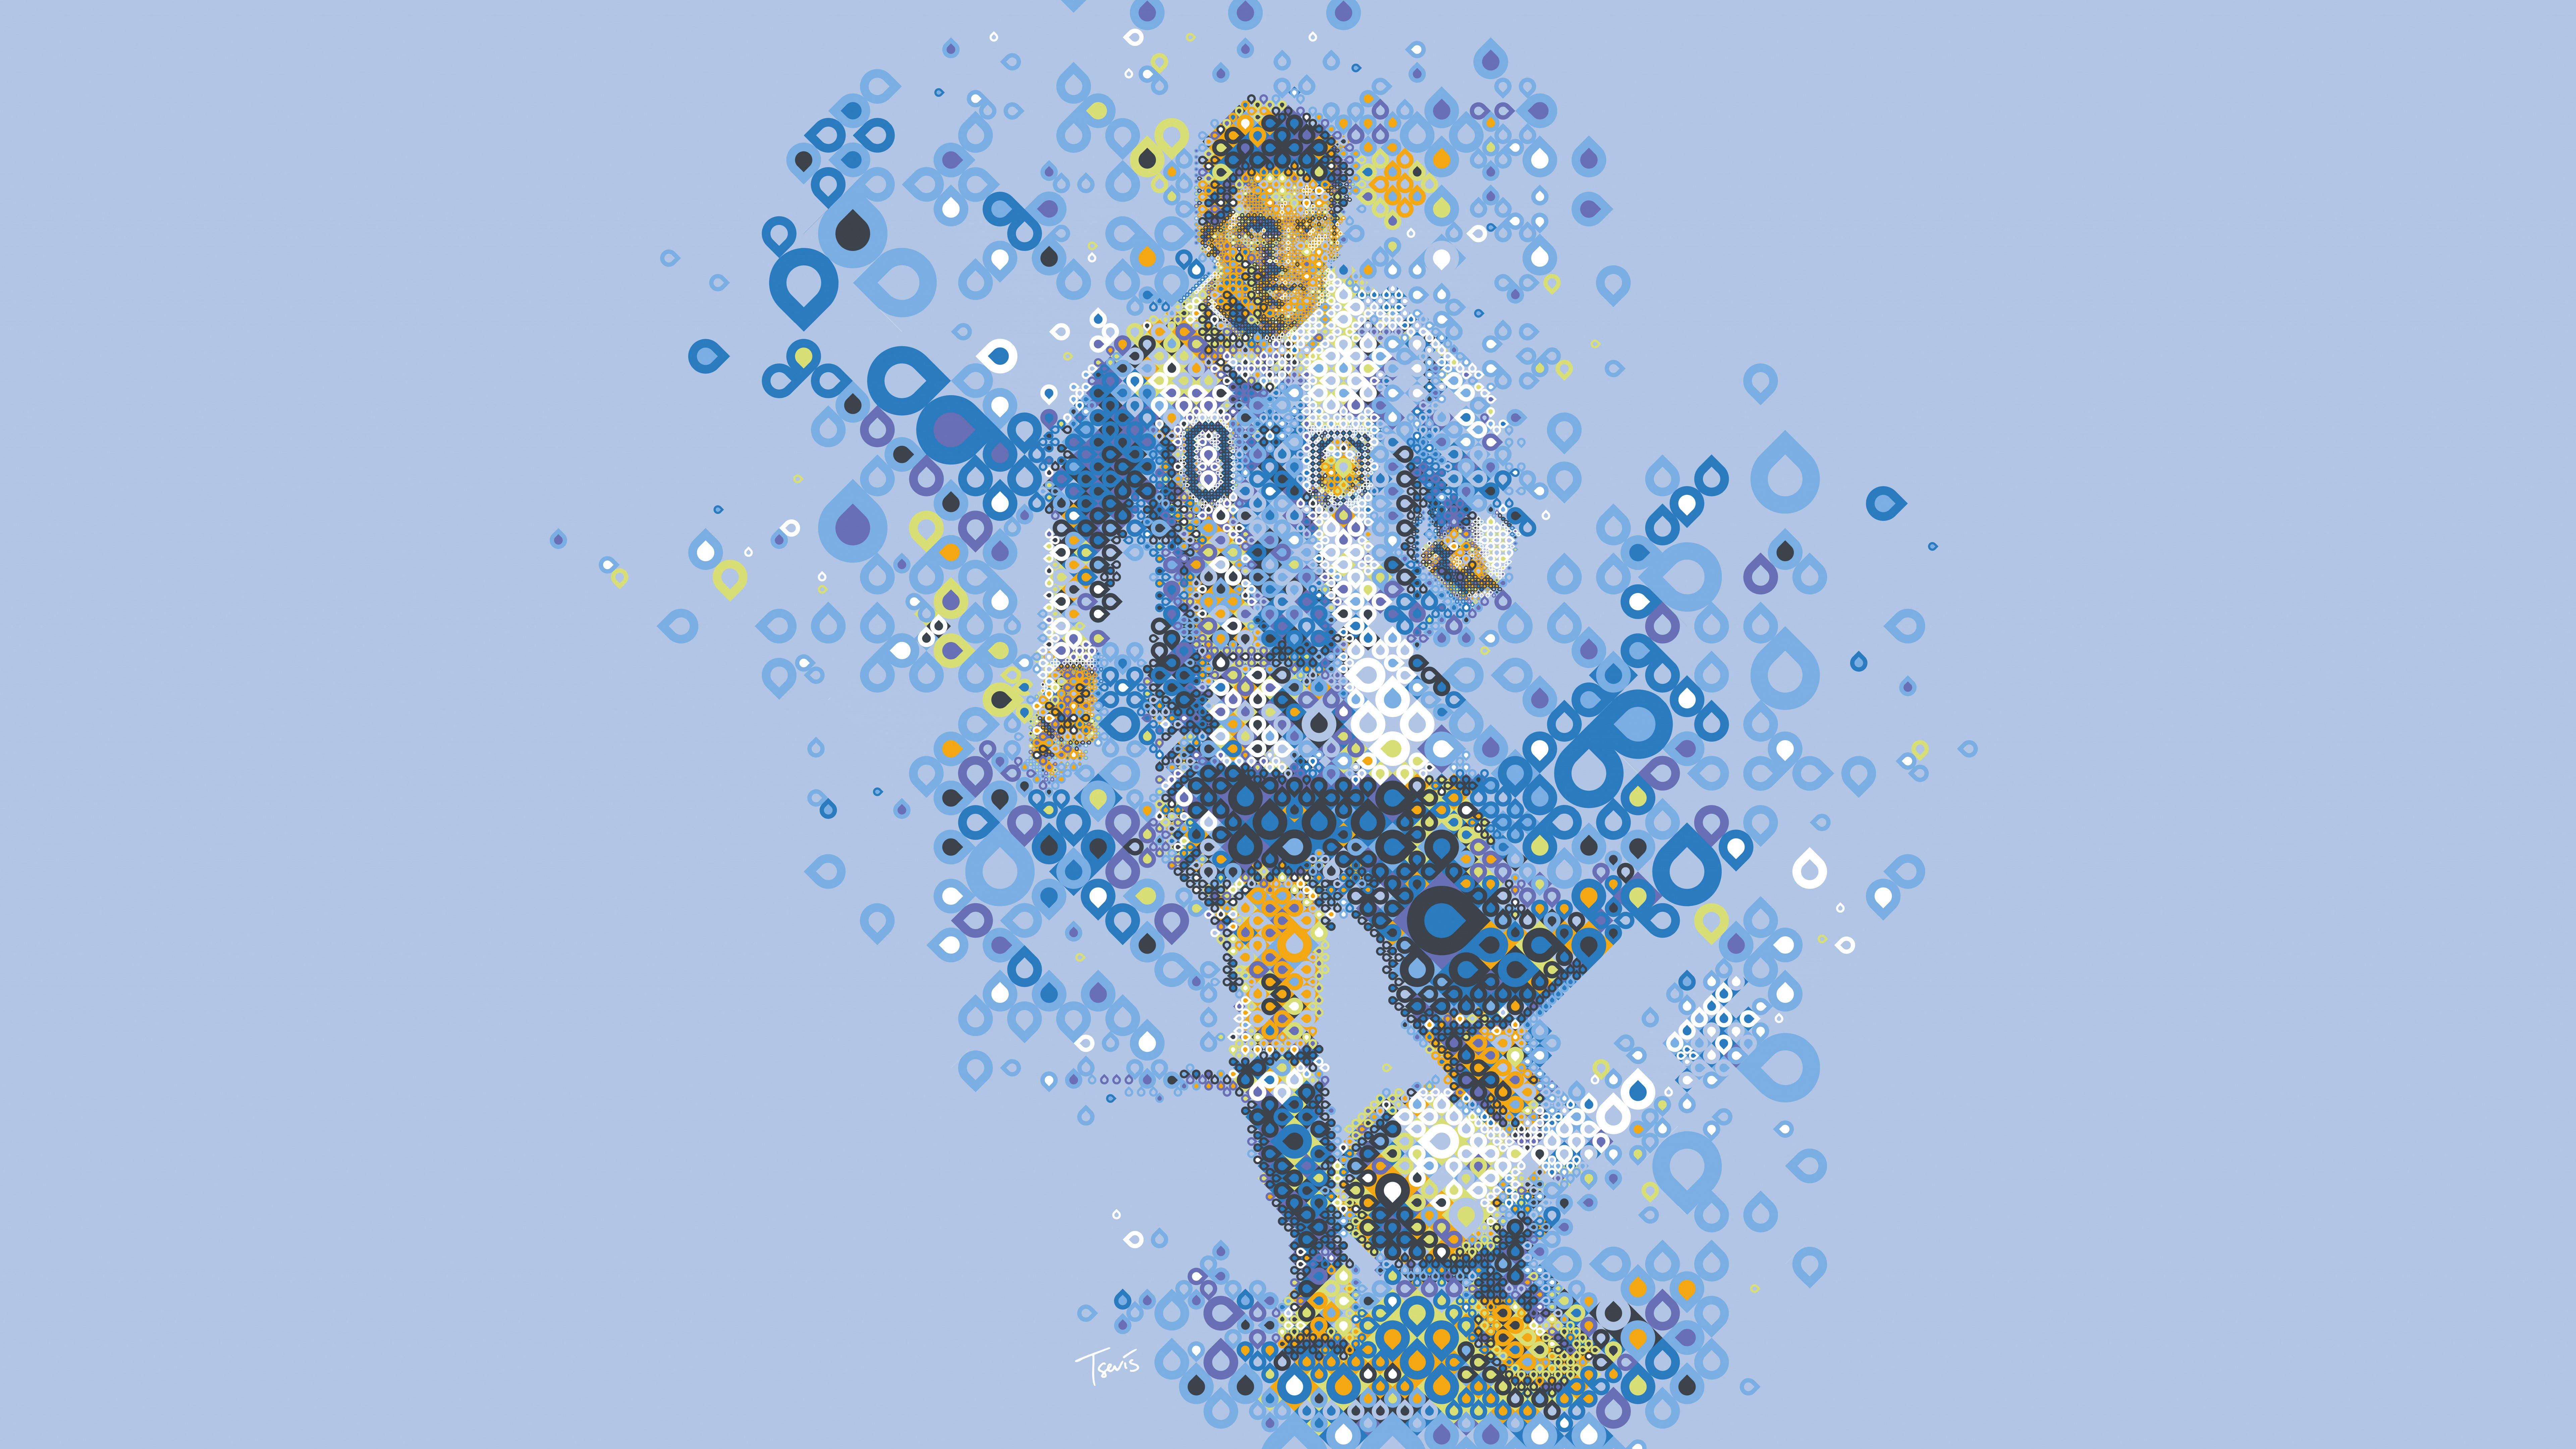 Messi Ultra HD: Khám phá những khoảnh khắc lịch sử của Messi với độ phân giải Ultra HD, mang đến trải nghiệm chưa từng có. Cho dù là phong cách chơi bóng tinh tế hay kỹ năng tuyệt vời trong mỗi trận đấu, bạn sẽ xem được tất cả với độ nét hình ảnh vượt trội này. Hãy thưởng thức những pha bóng đẹp mê hồn của Messi ngay hôm nay.